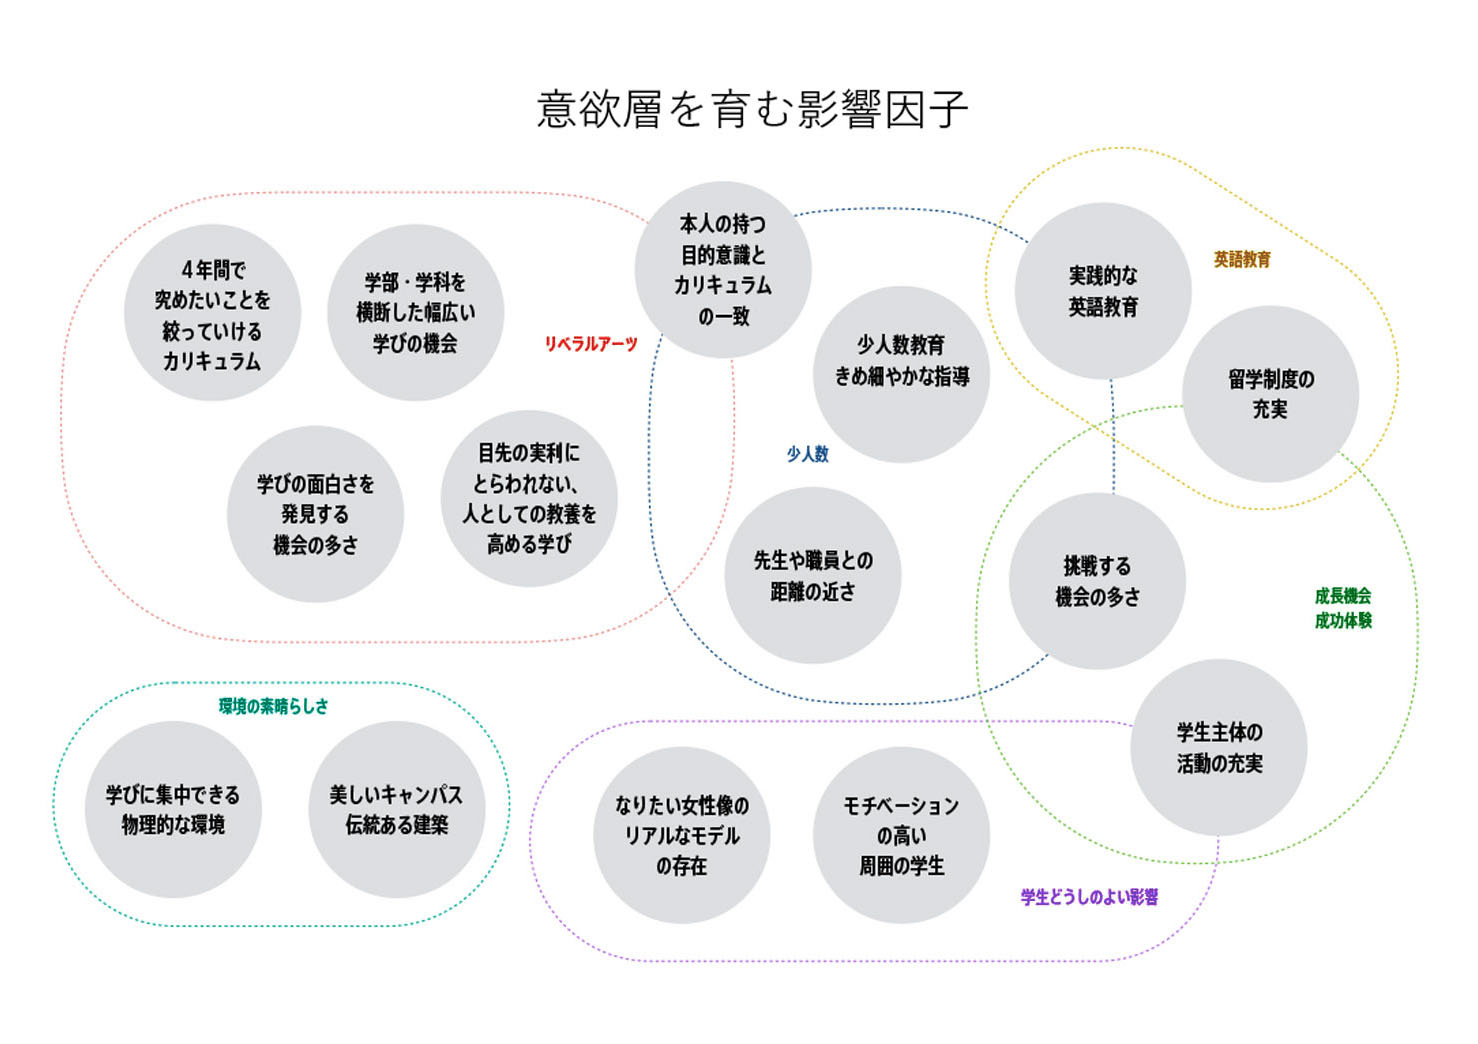 神戸女学院大学のブランディング検討で用いた検討用の図